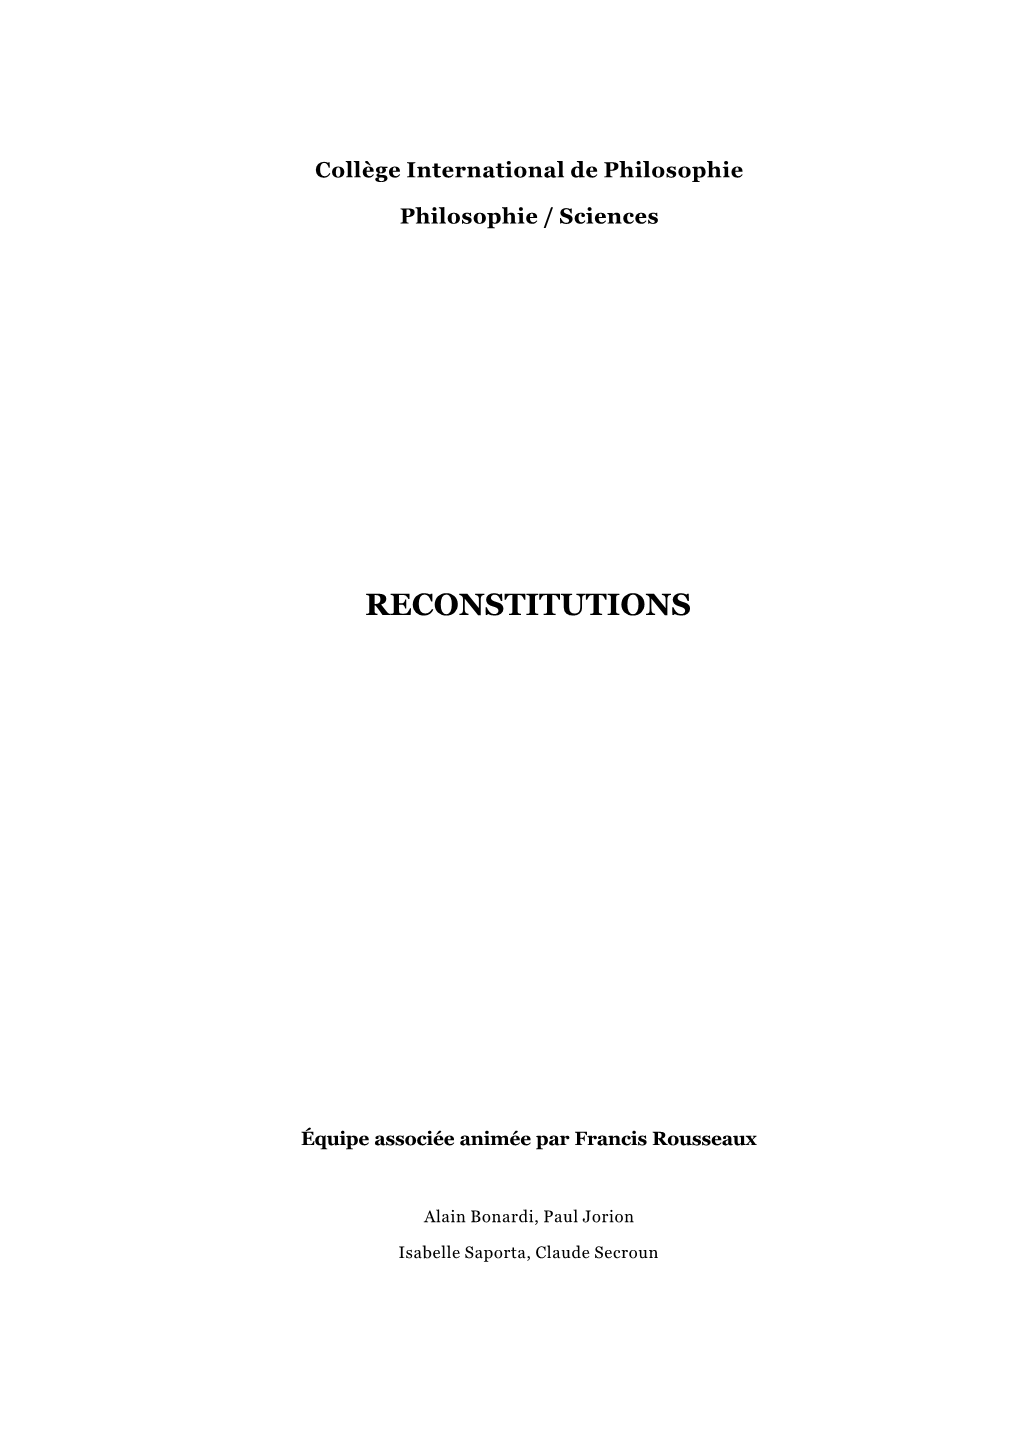 Reconstitutions